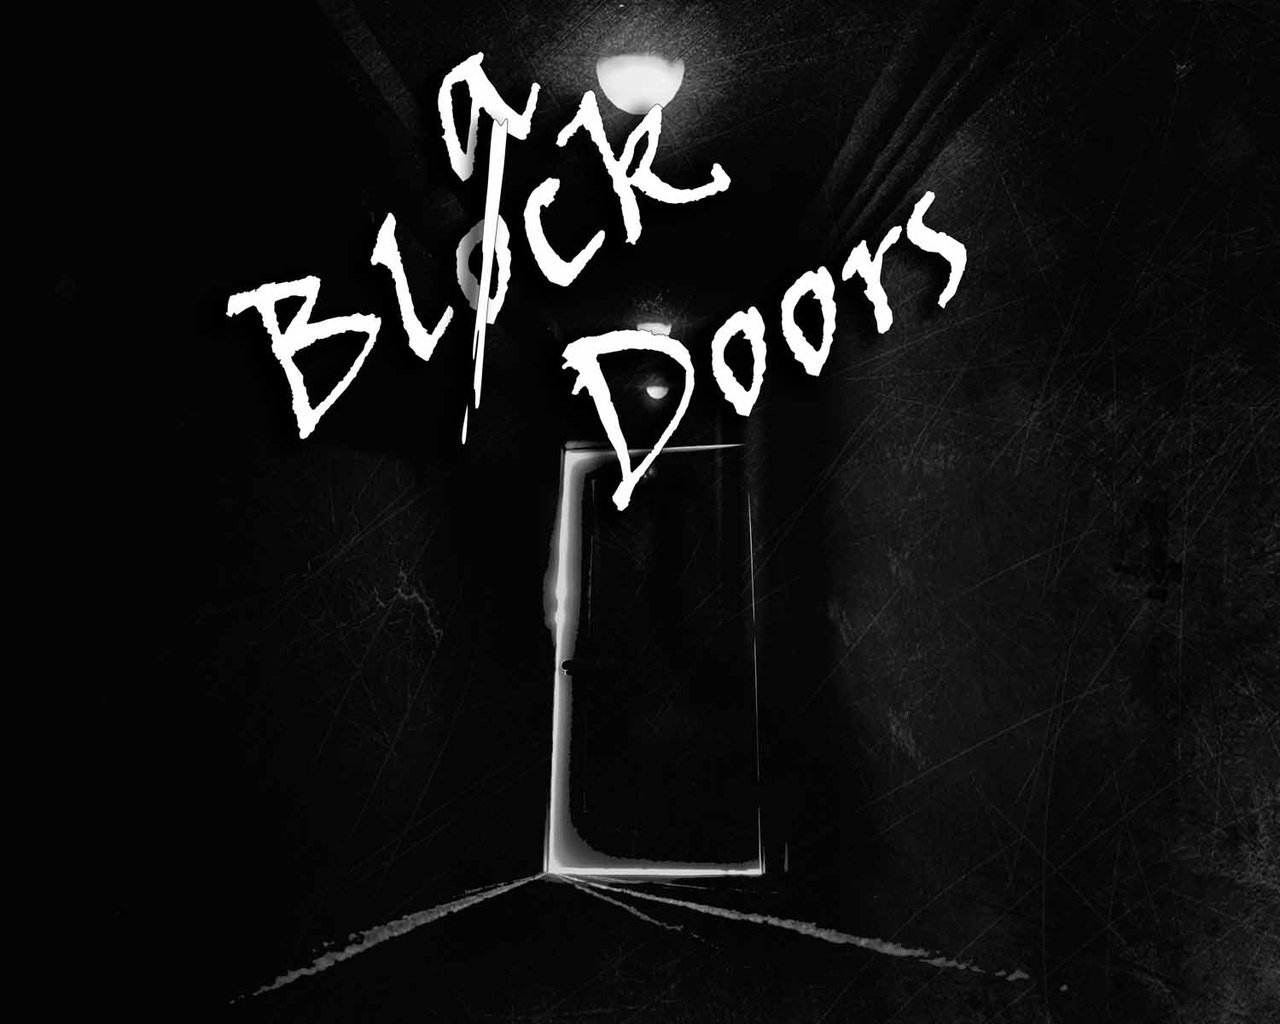 Квест Доорс в Москве. Квест Doors в Москве. Квест Доорс Doors в Москве. Покажи квест чёрная дверь. Квест открой дверь